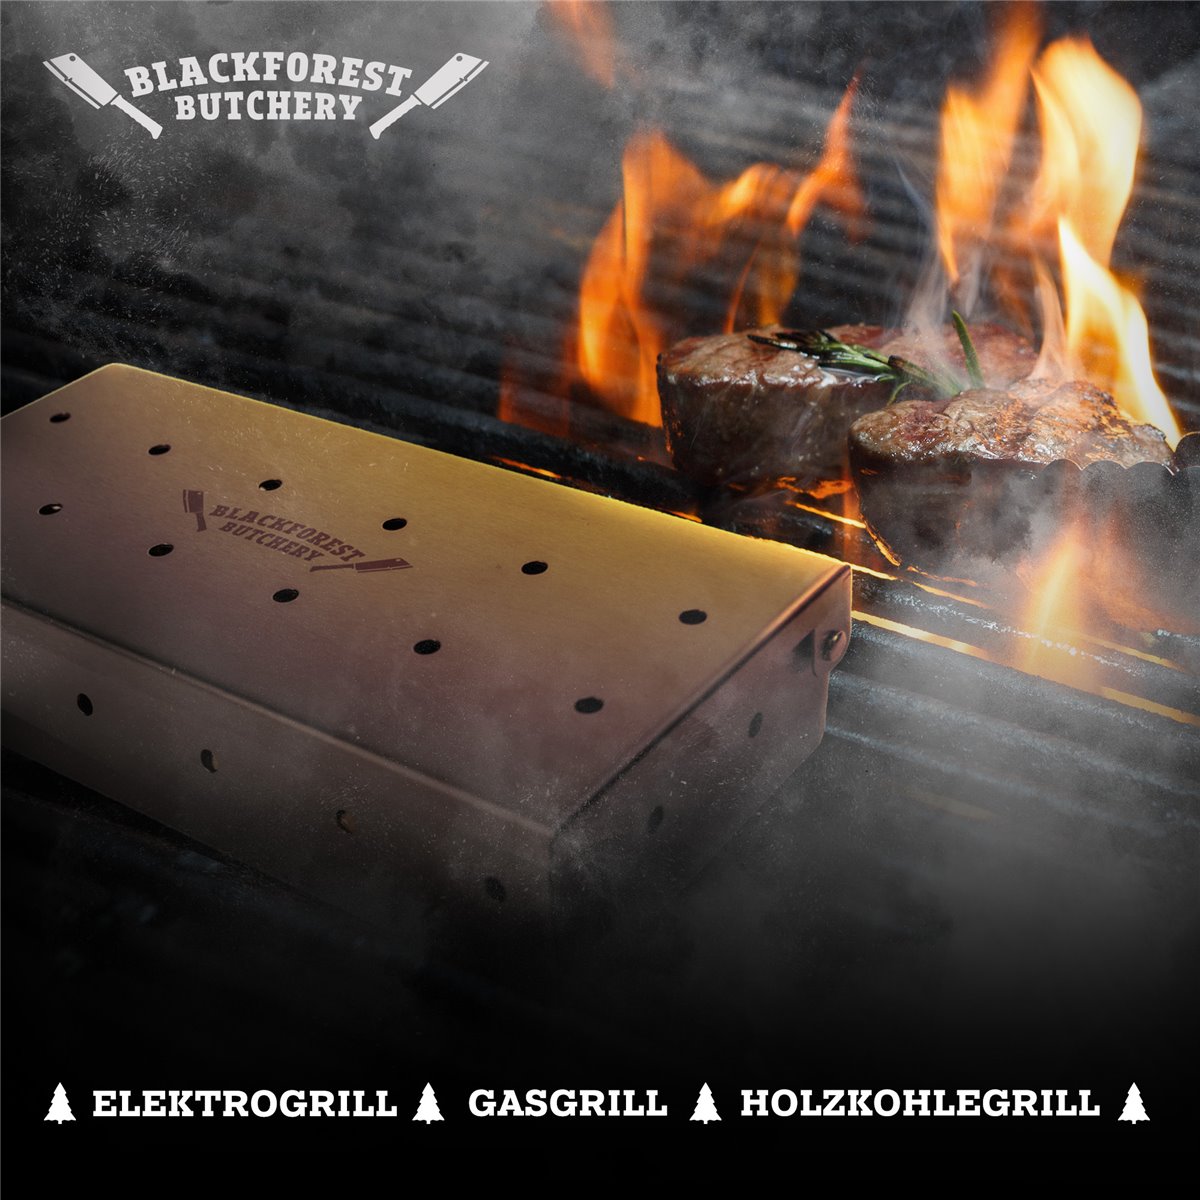 Räucherbox aus Edelstahl für BBQ - Smokerbox 
